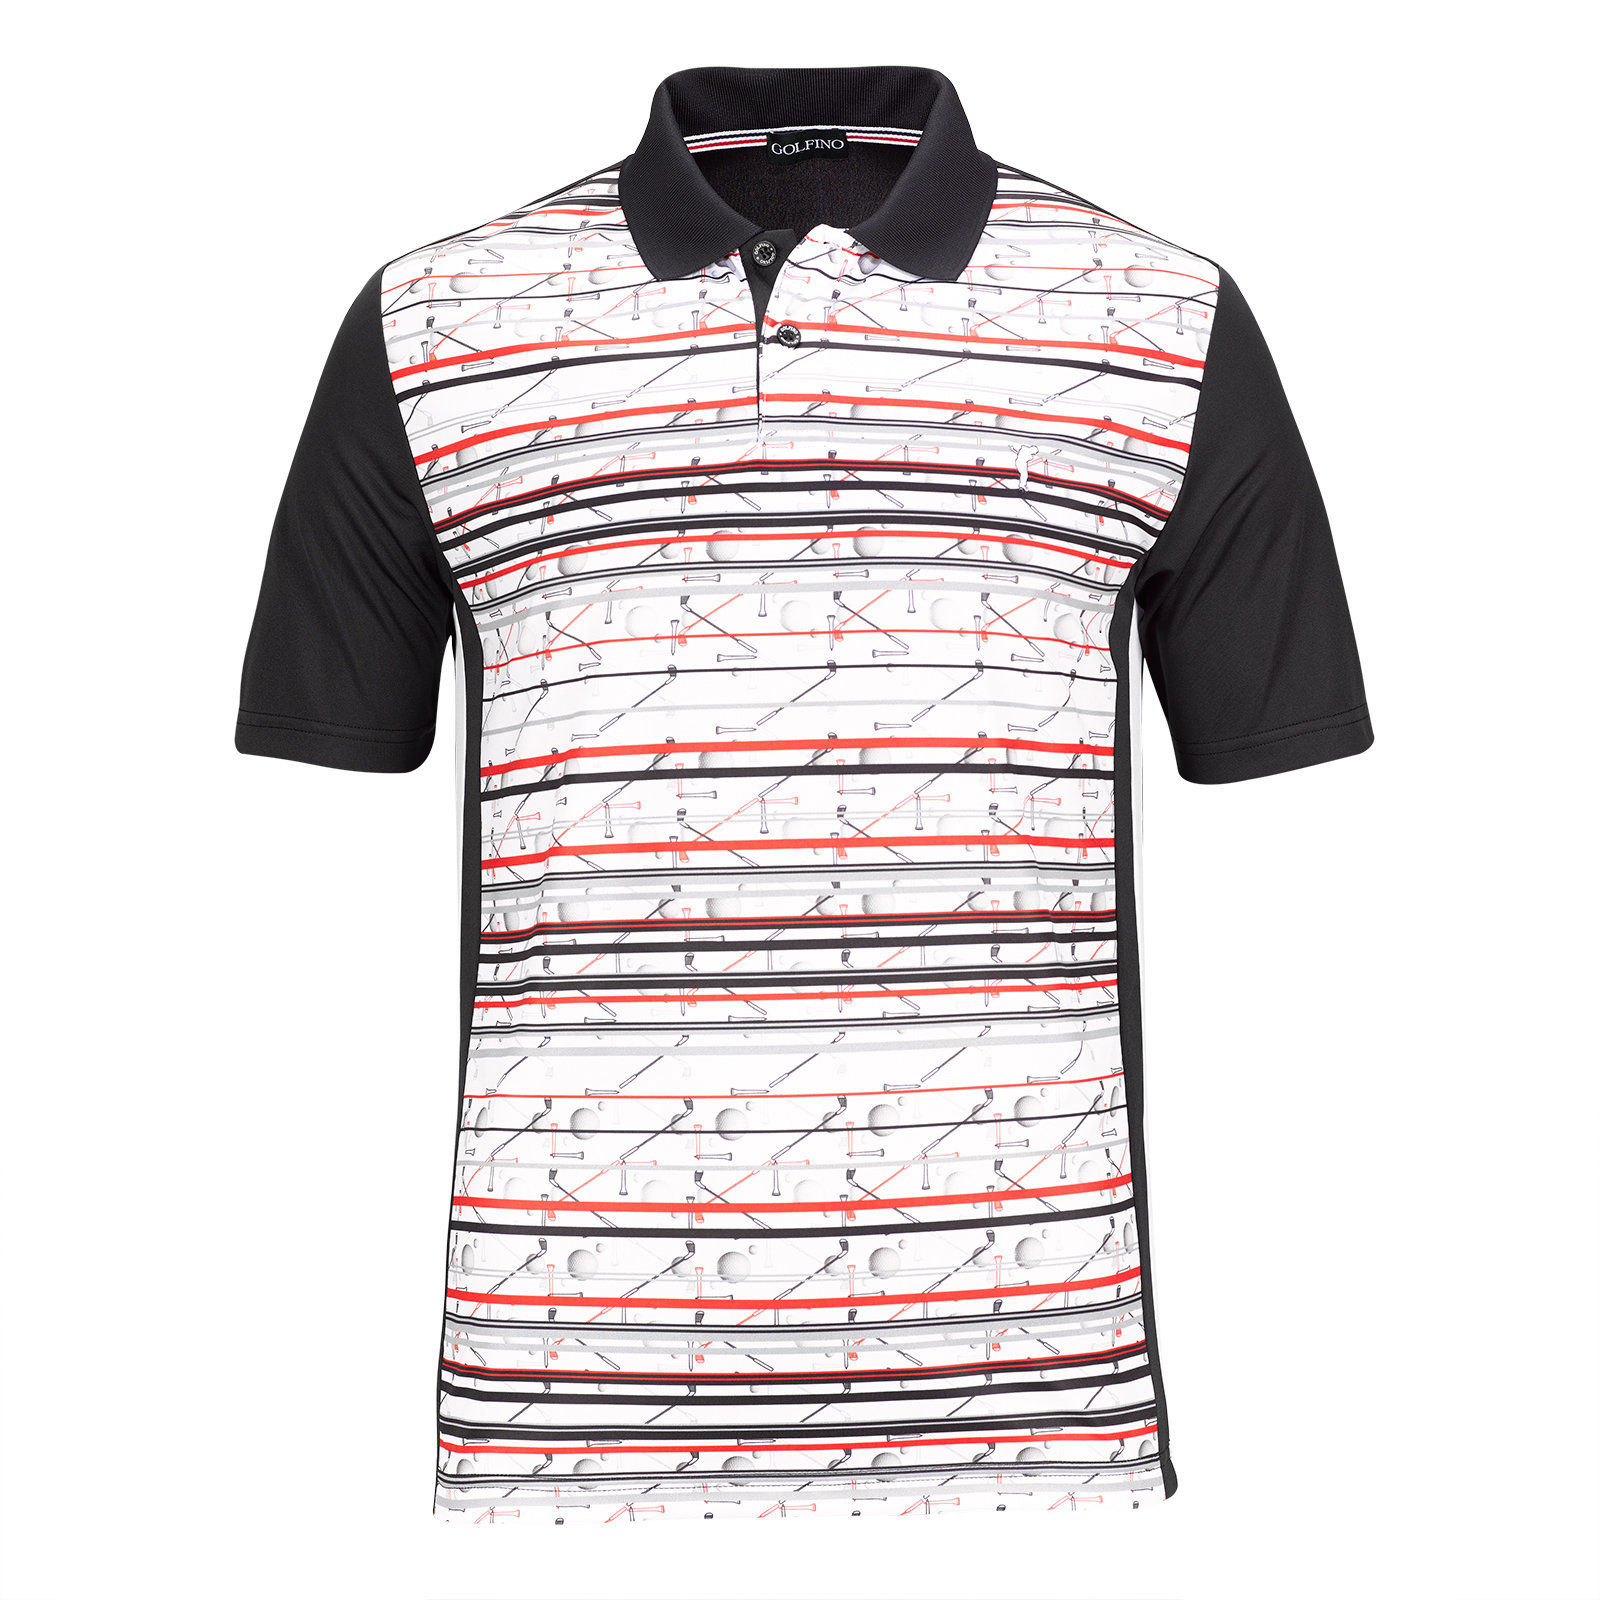 Polo Shirt Golfino Red Performance Striped Mens Polo Shirt Black 50